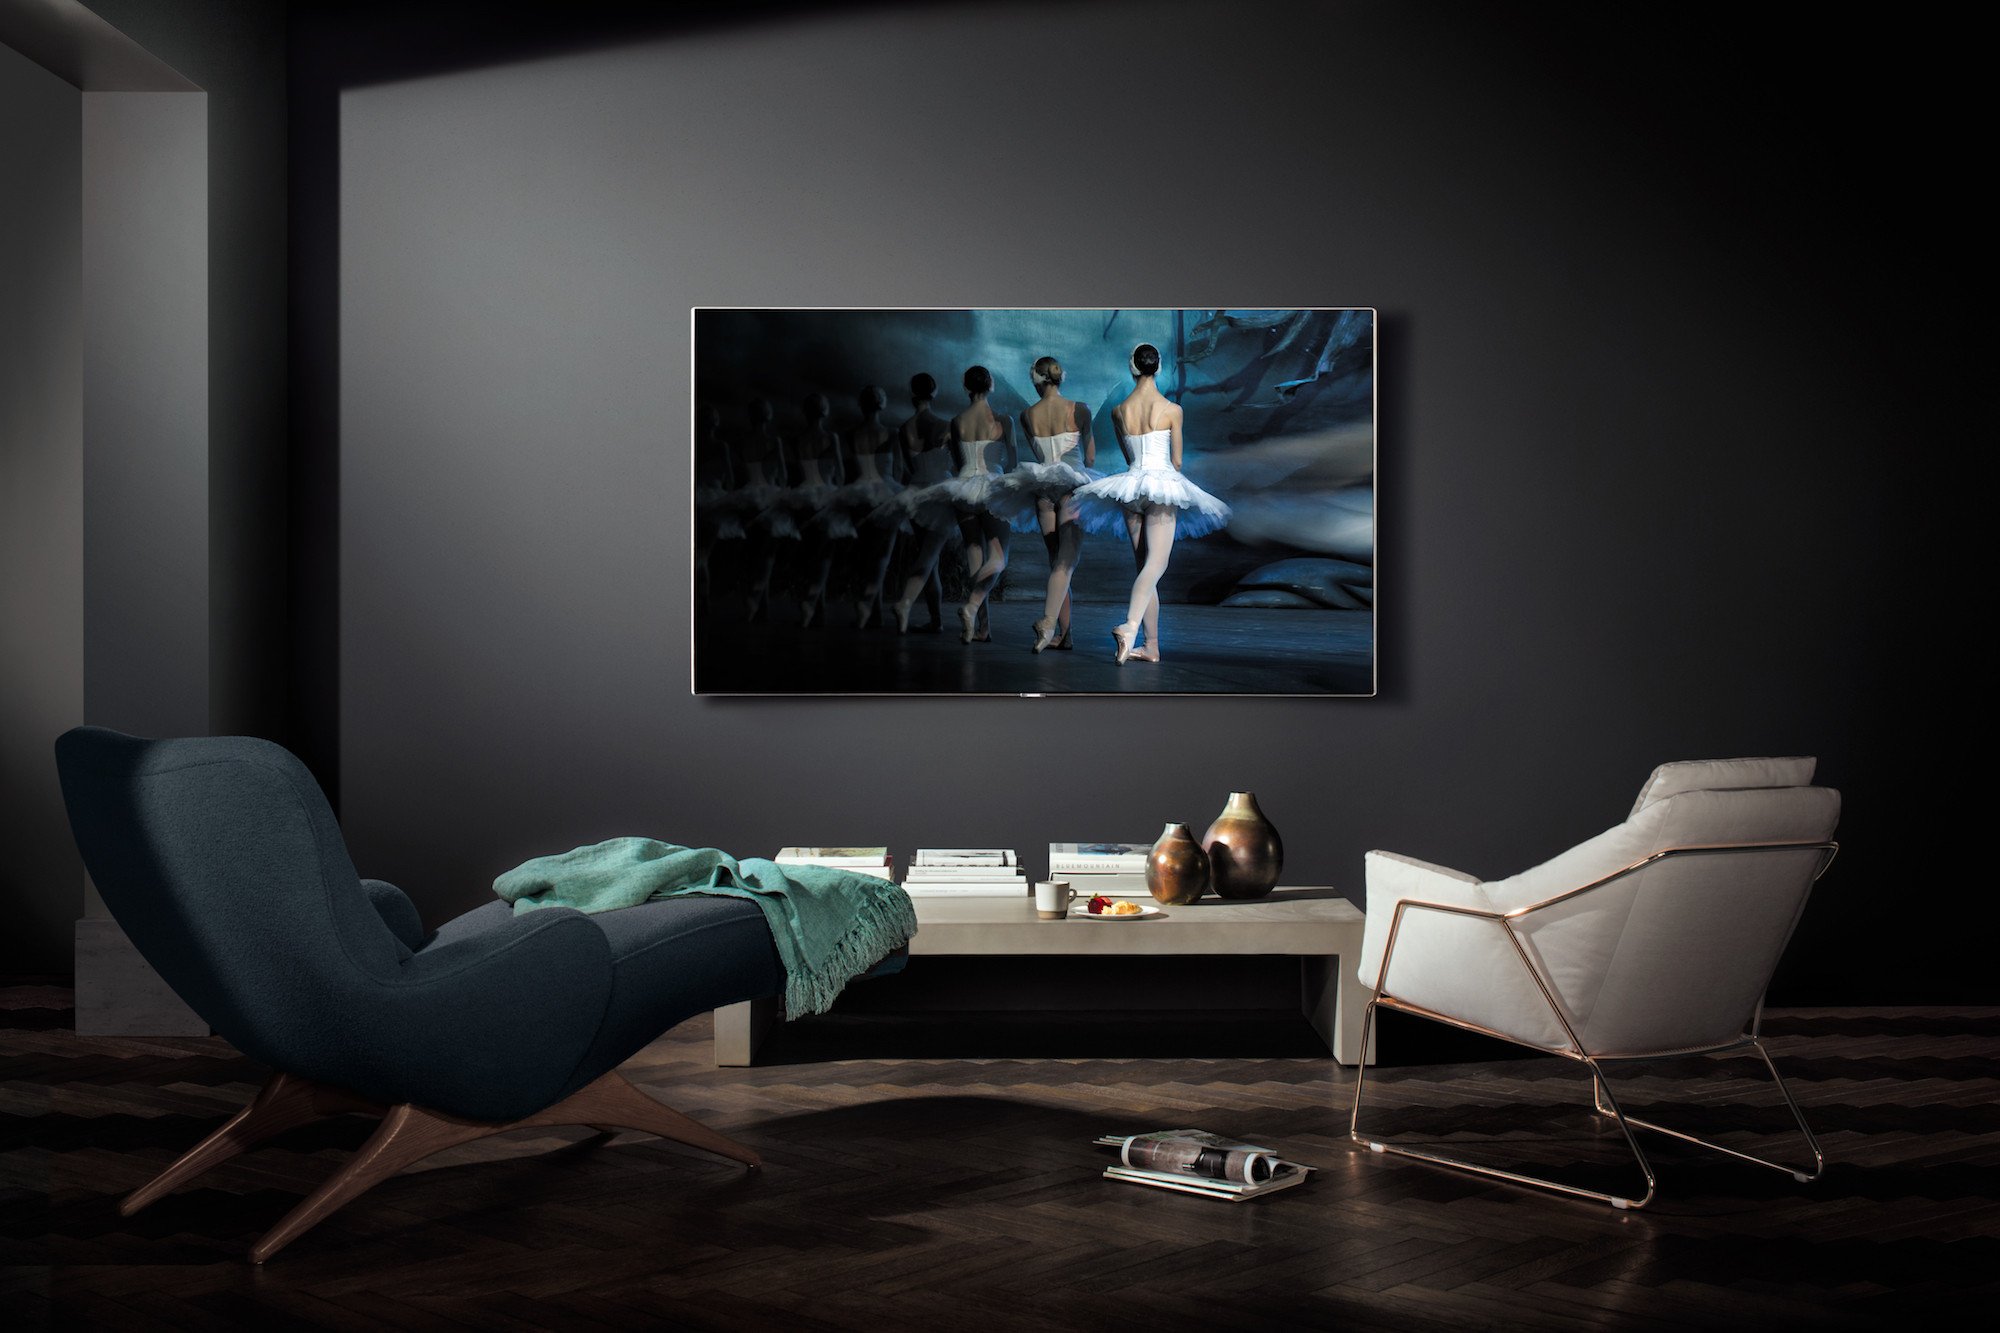 Телевизоры qled hyundai. Телевизор QLED Samsung qe65q8cam 65" (2017). Телевизор Samsung QLED на стене. Телевизор самсунг 65 дюймов.